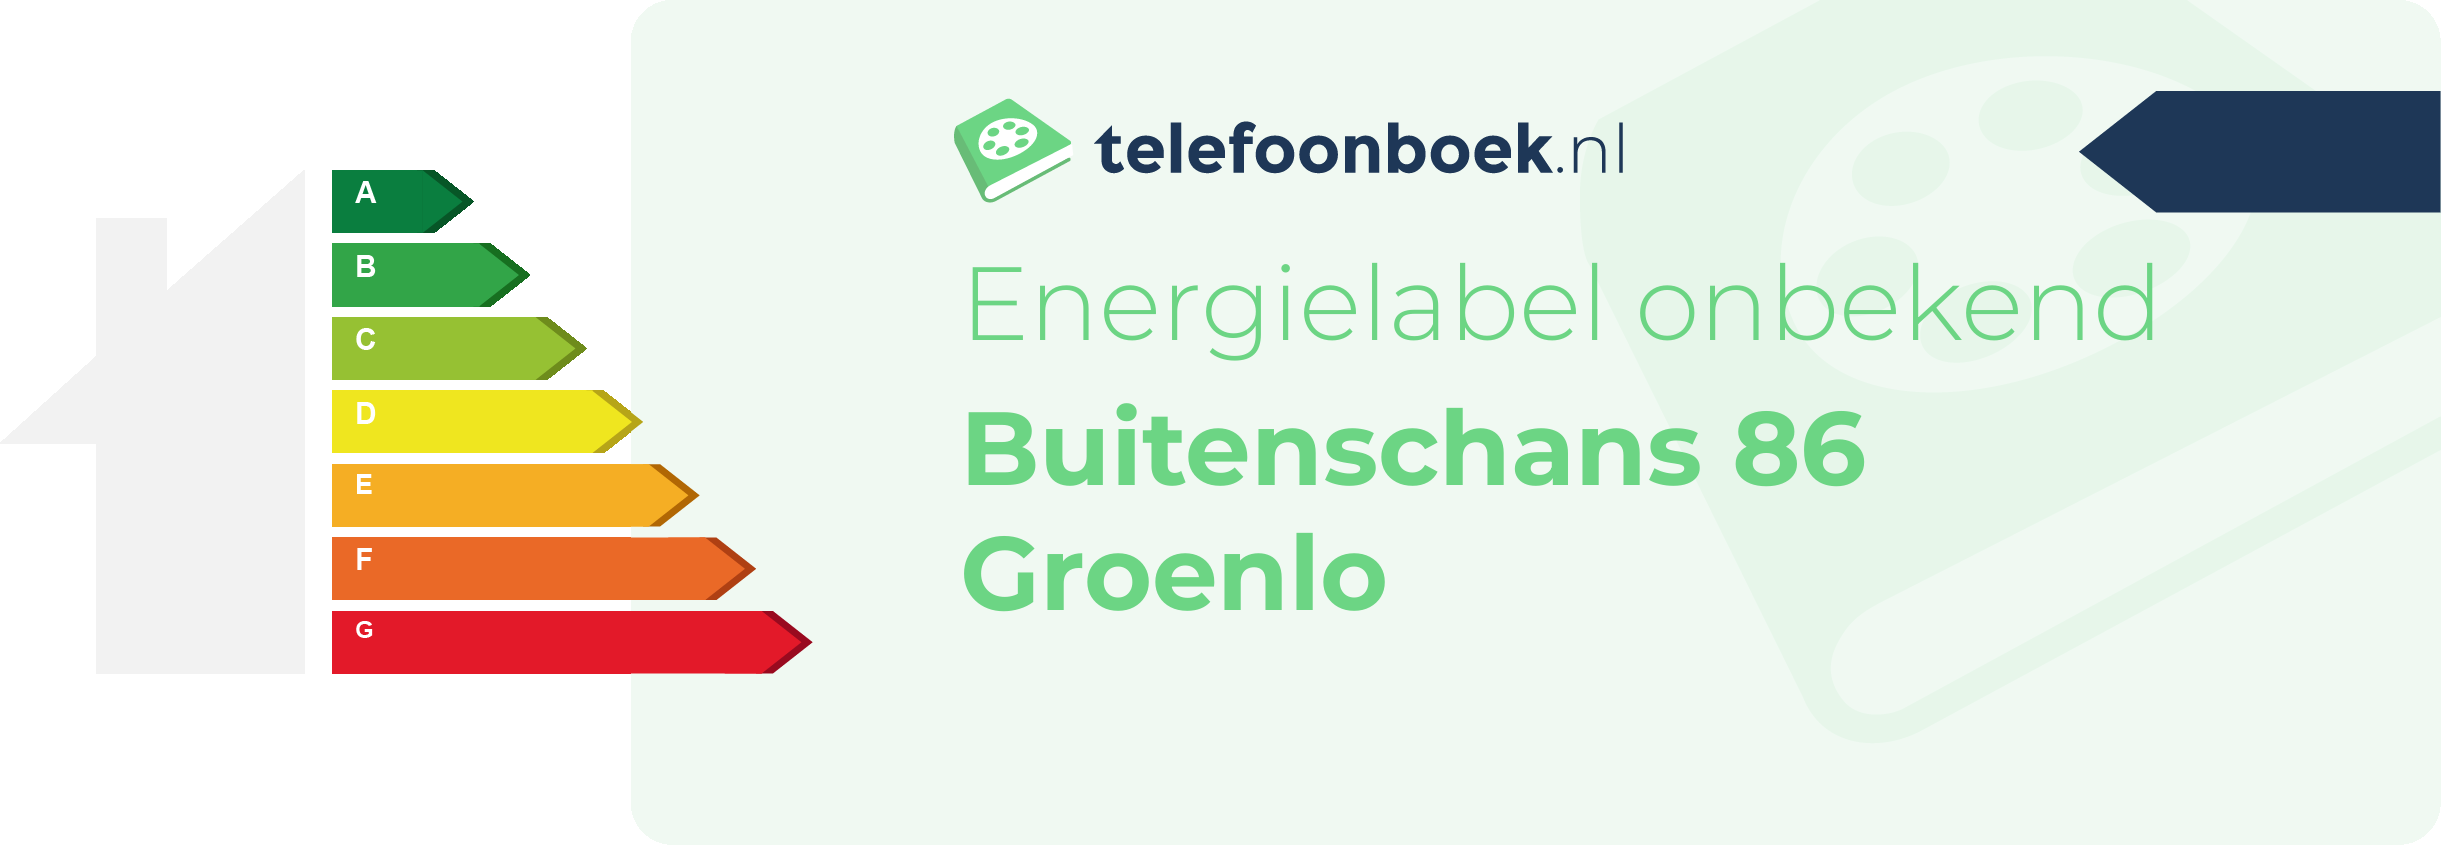 Energielabel Buitenschans 86 Groenlo